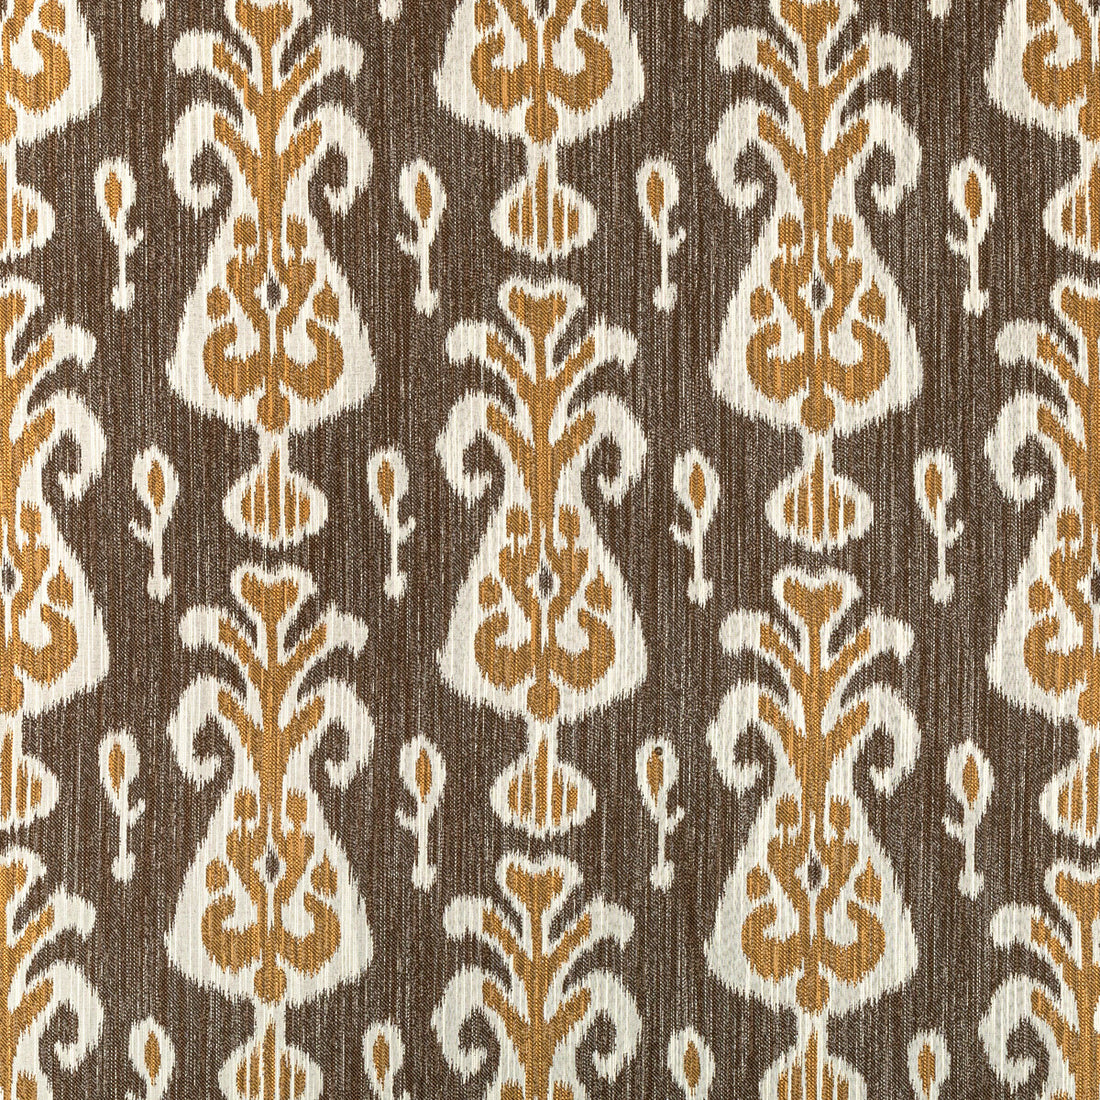 Kravet Design fabric in 36760-640 color - pattern 36760.640.0 - by Kravet Design